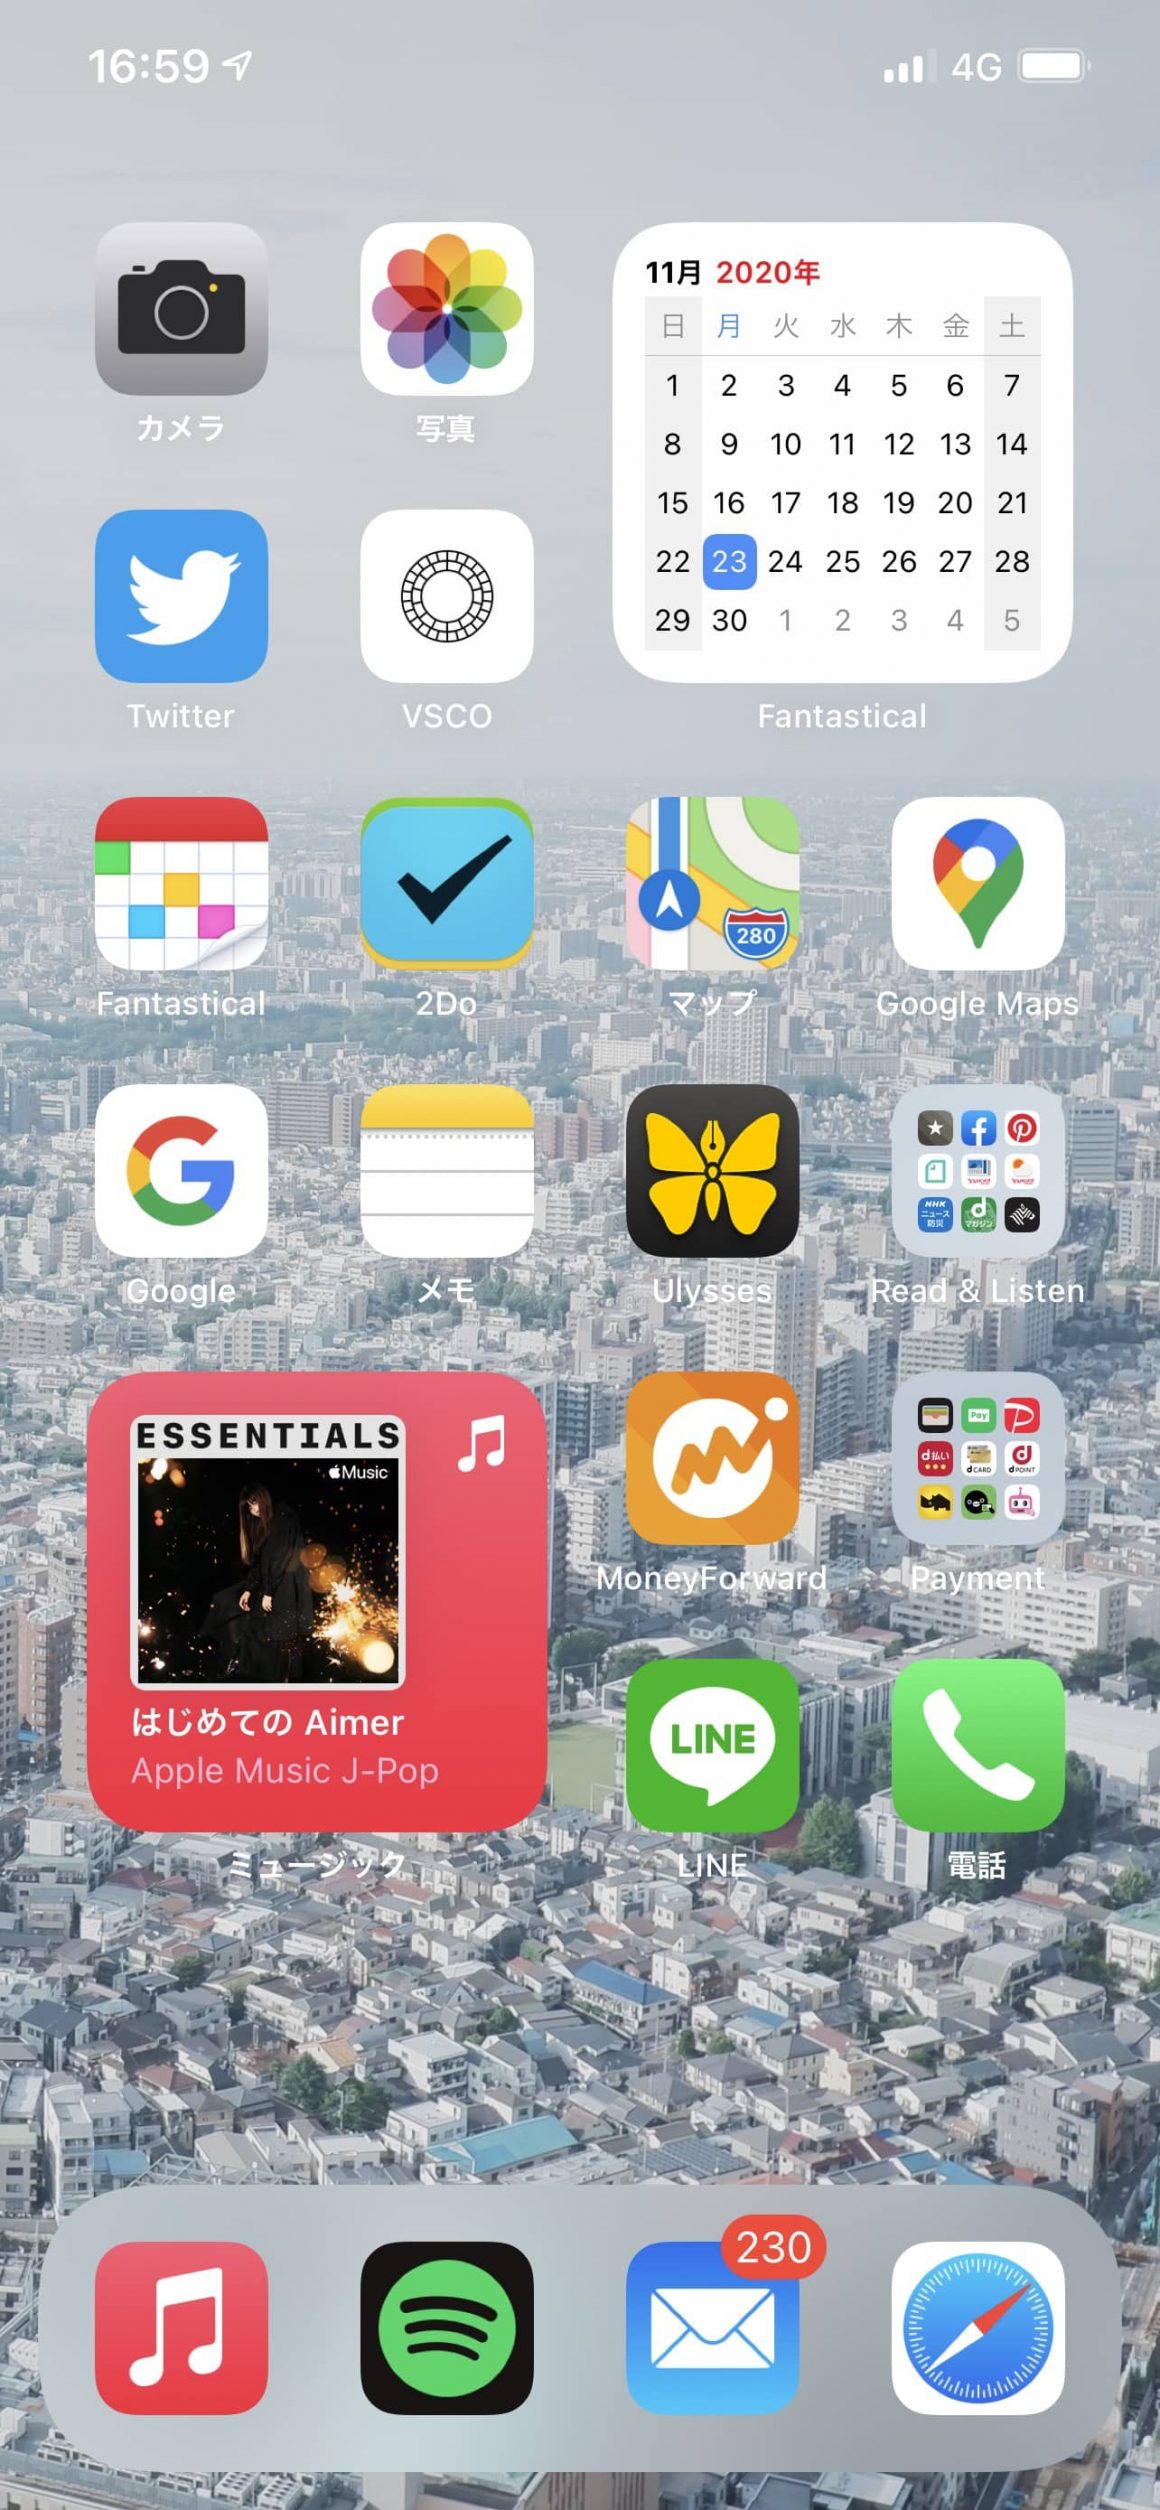 Iphoneのホーム画面を1ページだけにしたら快適だった Starnote